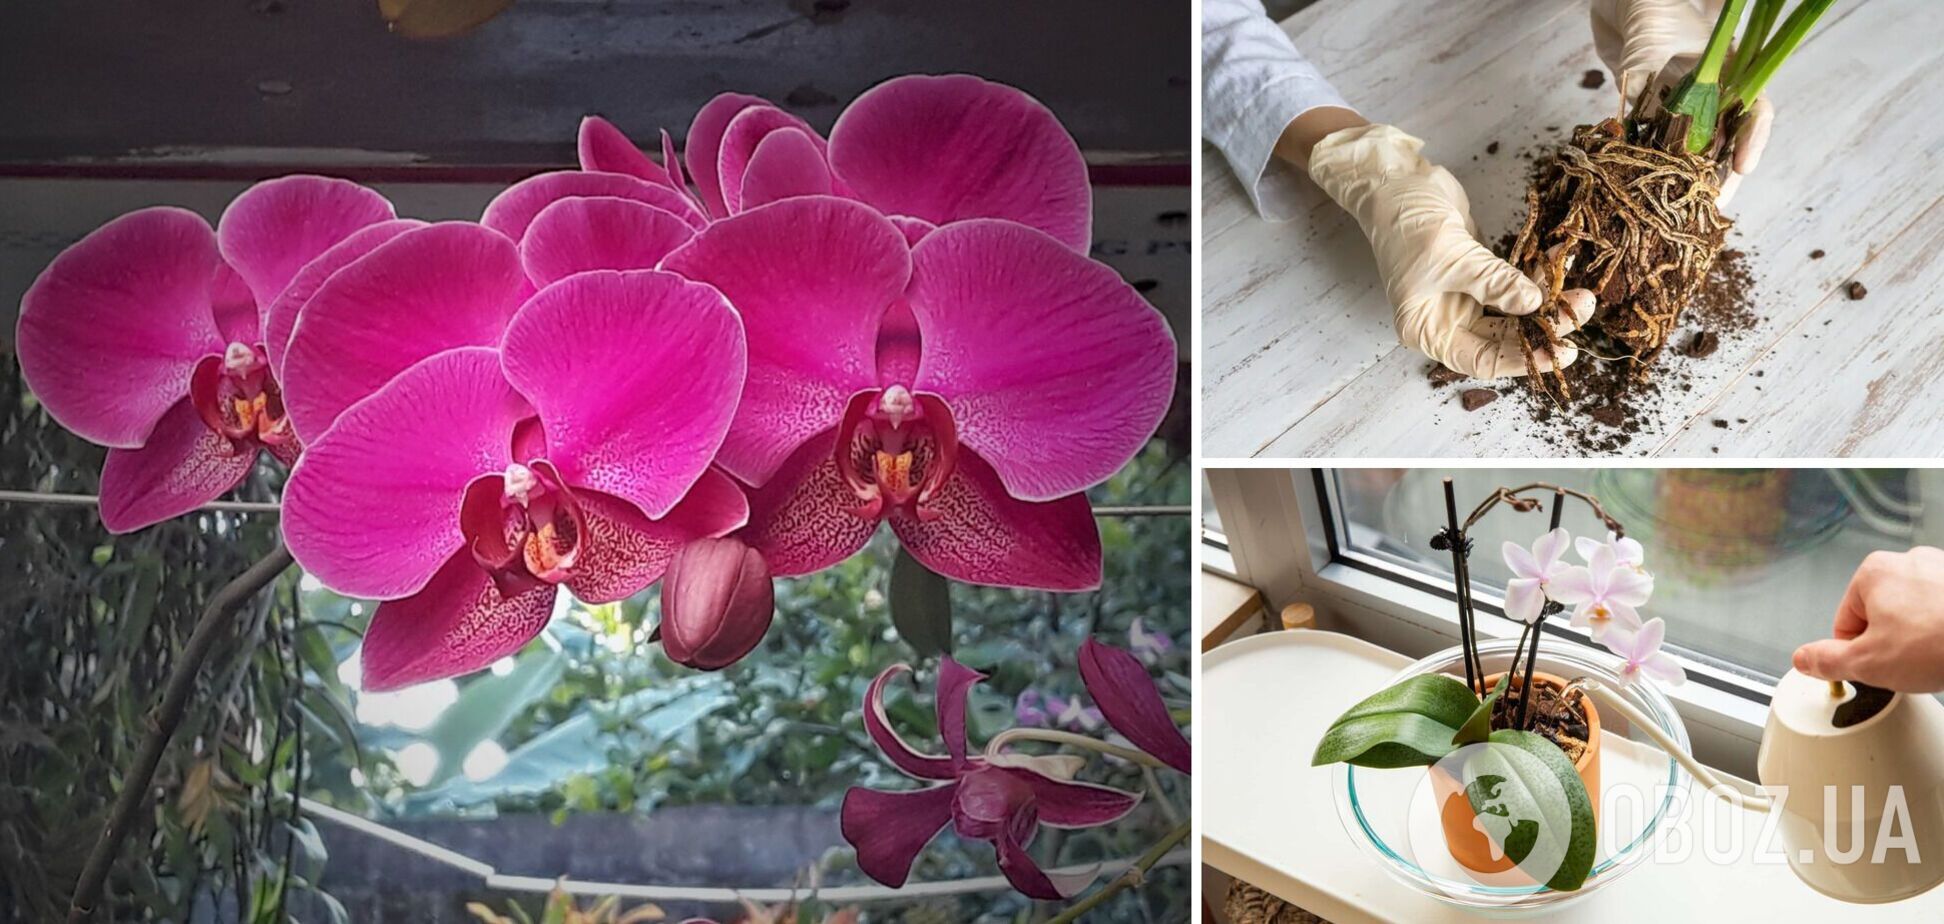 Нашумілий засіб може вбити орхідею: чим категорично не можна 'рятувати' квітку